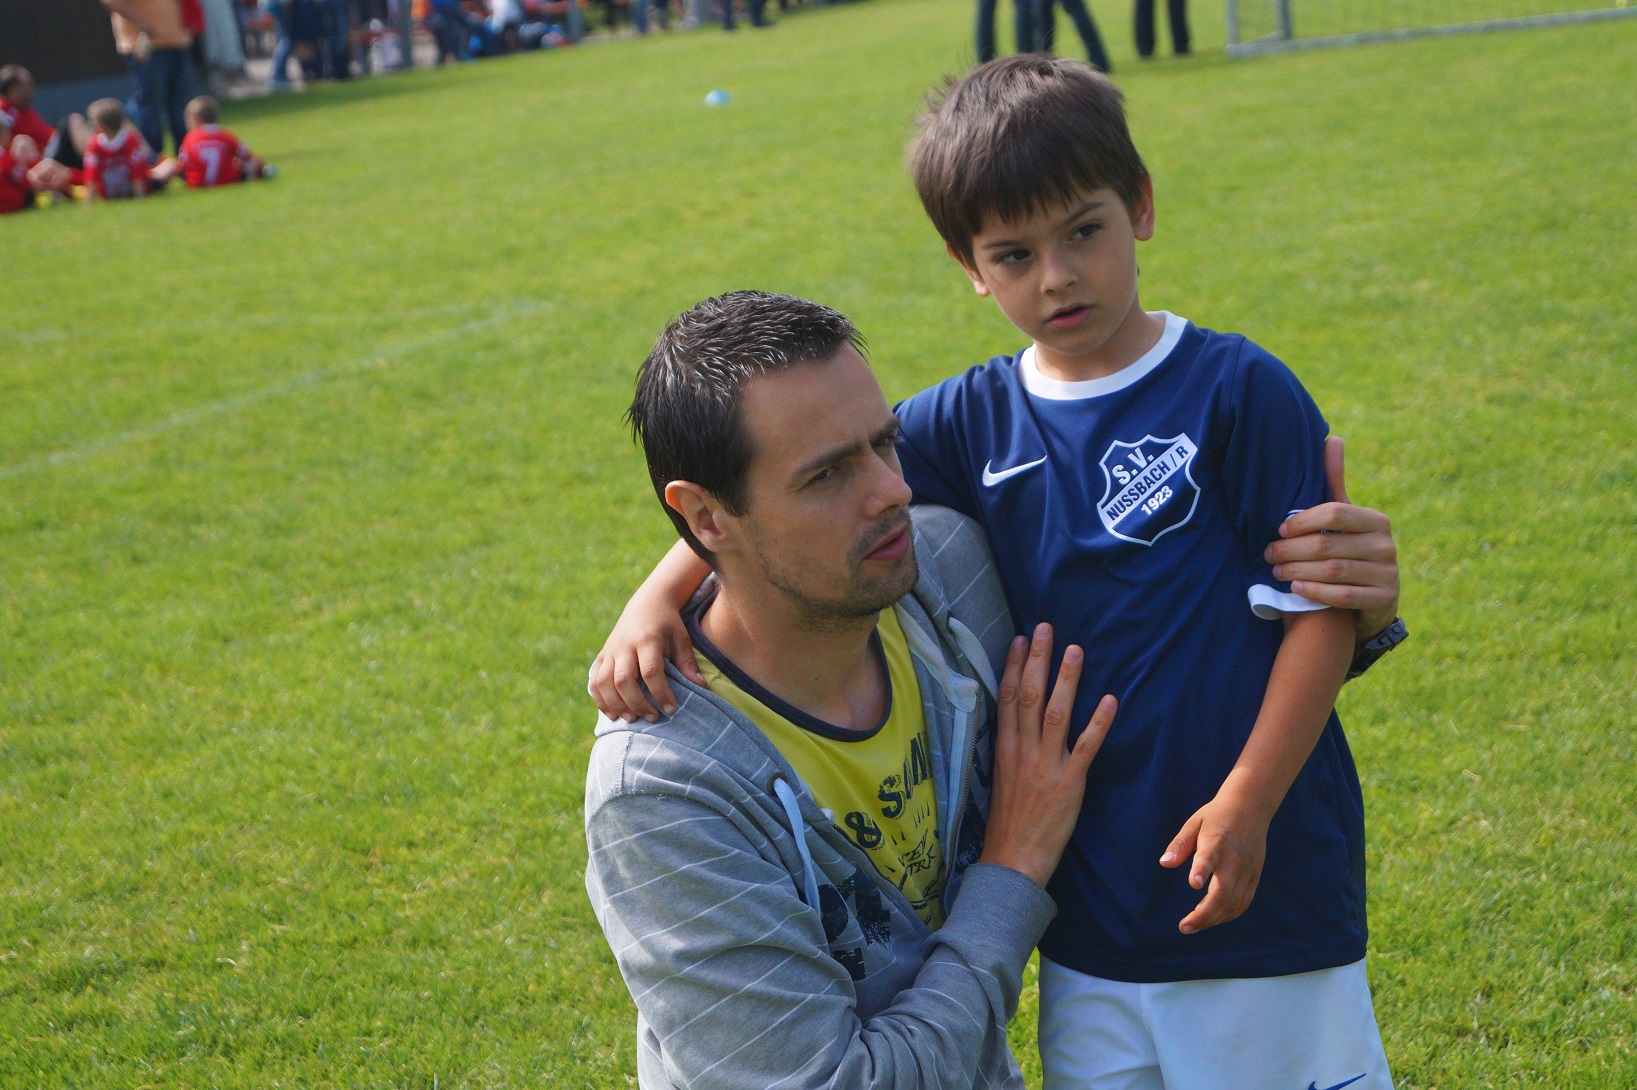 Pai com menino no campo de futebol. Imagem ilustrativa texto iniciar as crianças nos esportes.